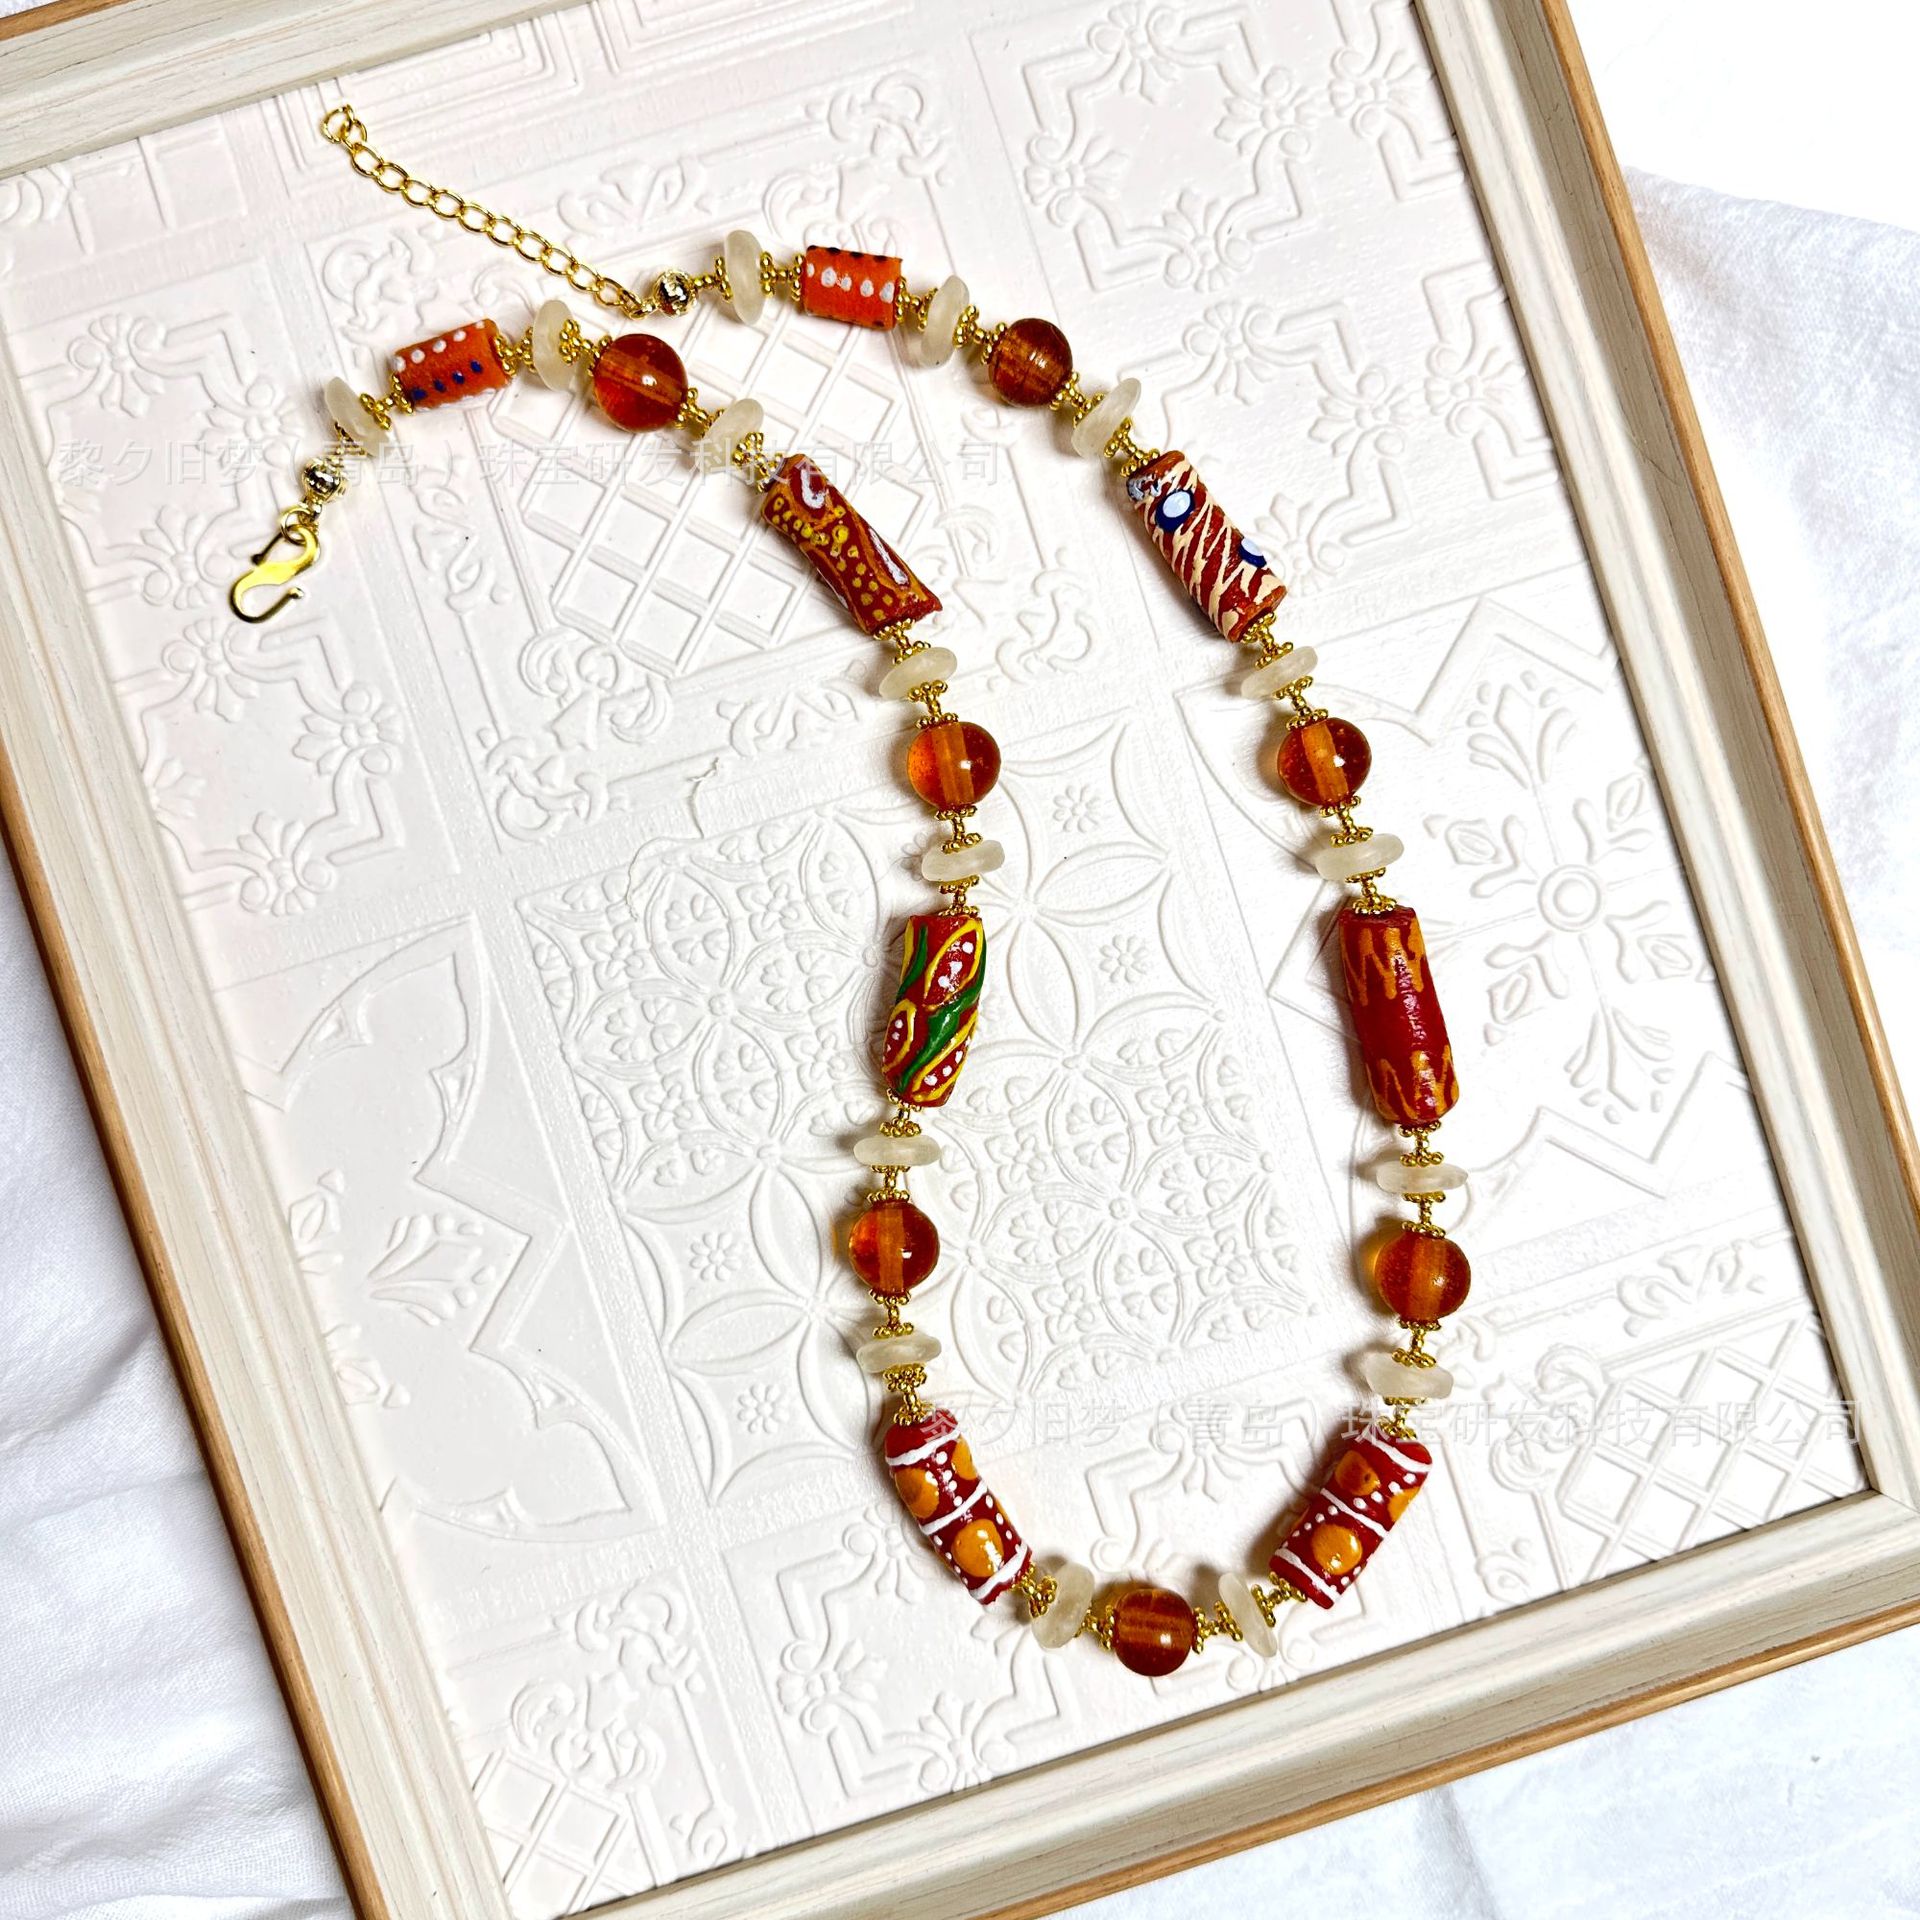 Small women's old glass necklace accessories rule hand-woven pure copper accessories retro senior sense pattern jewelry